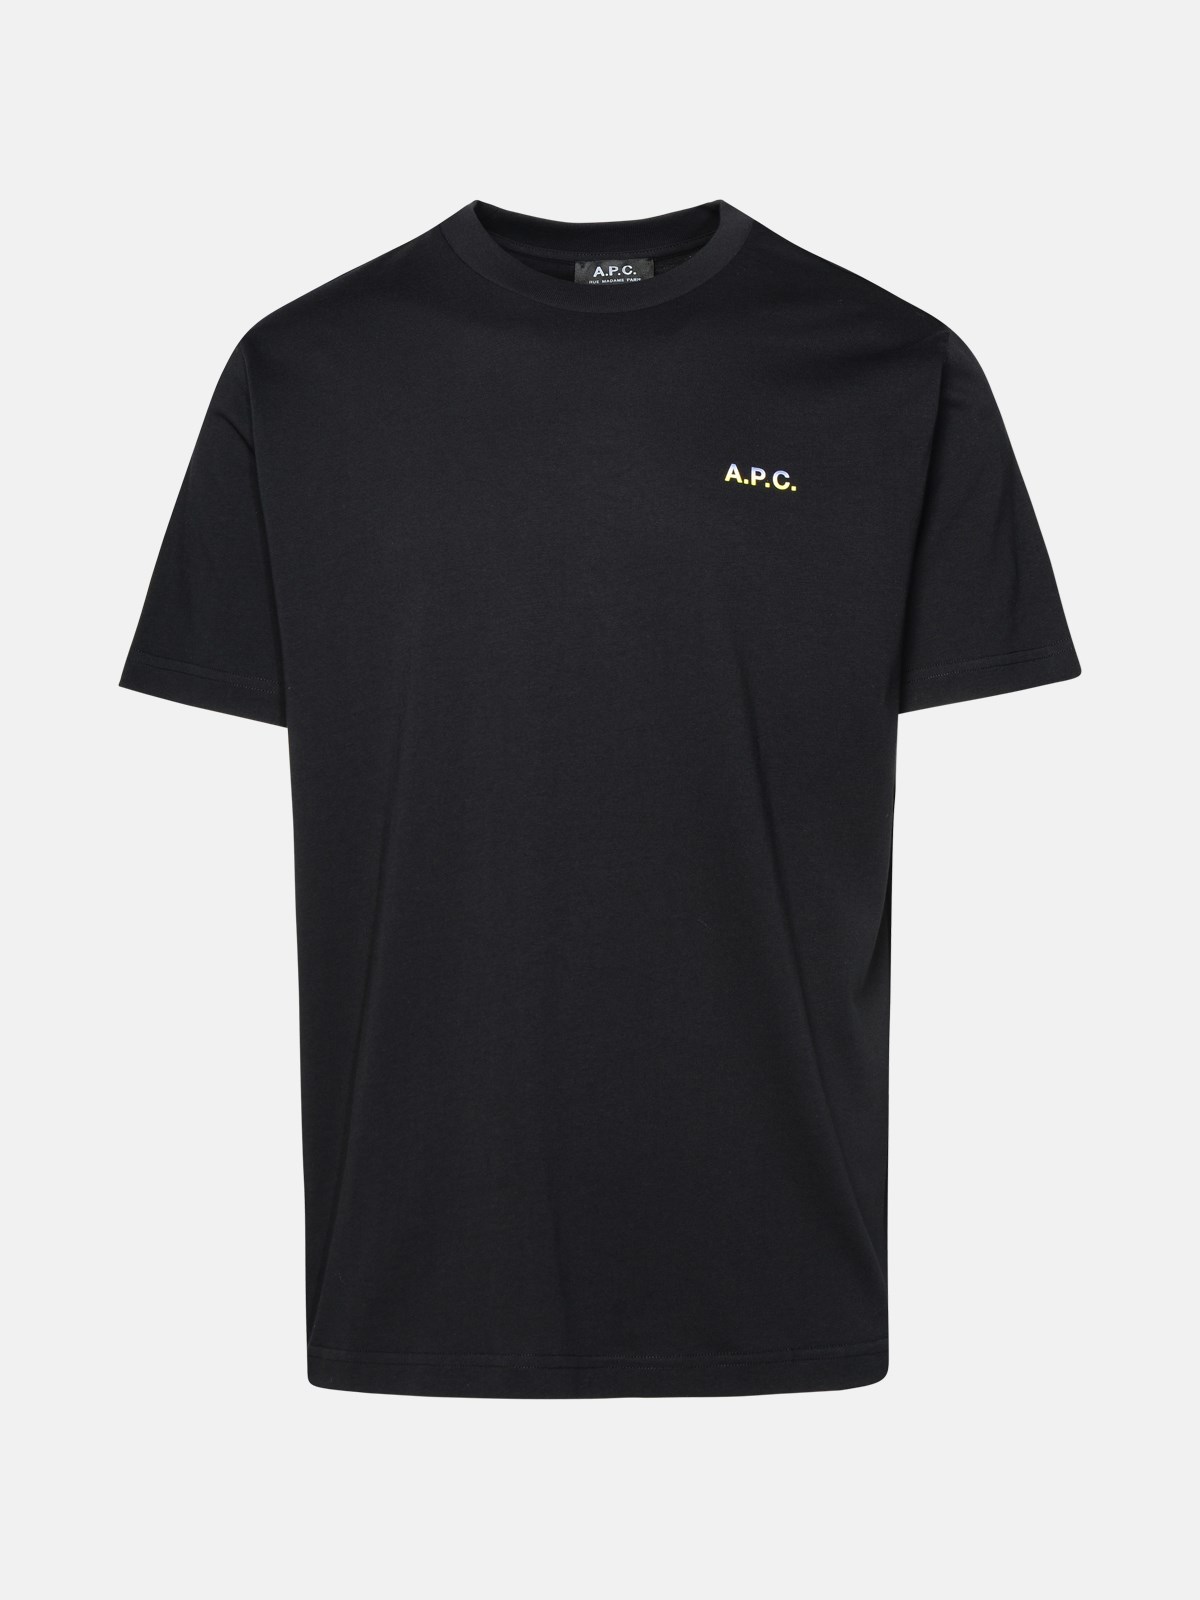 A.p.c. Black Cotton T-shirt